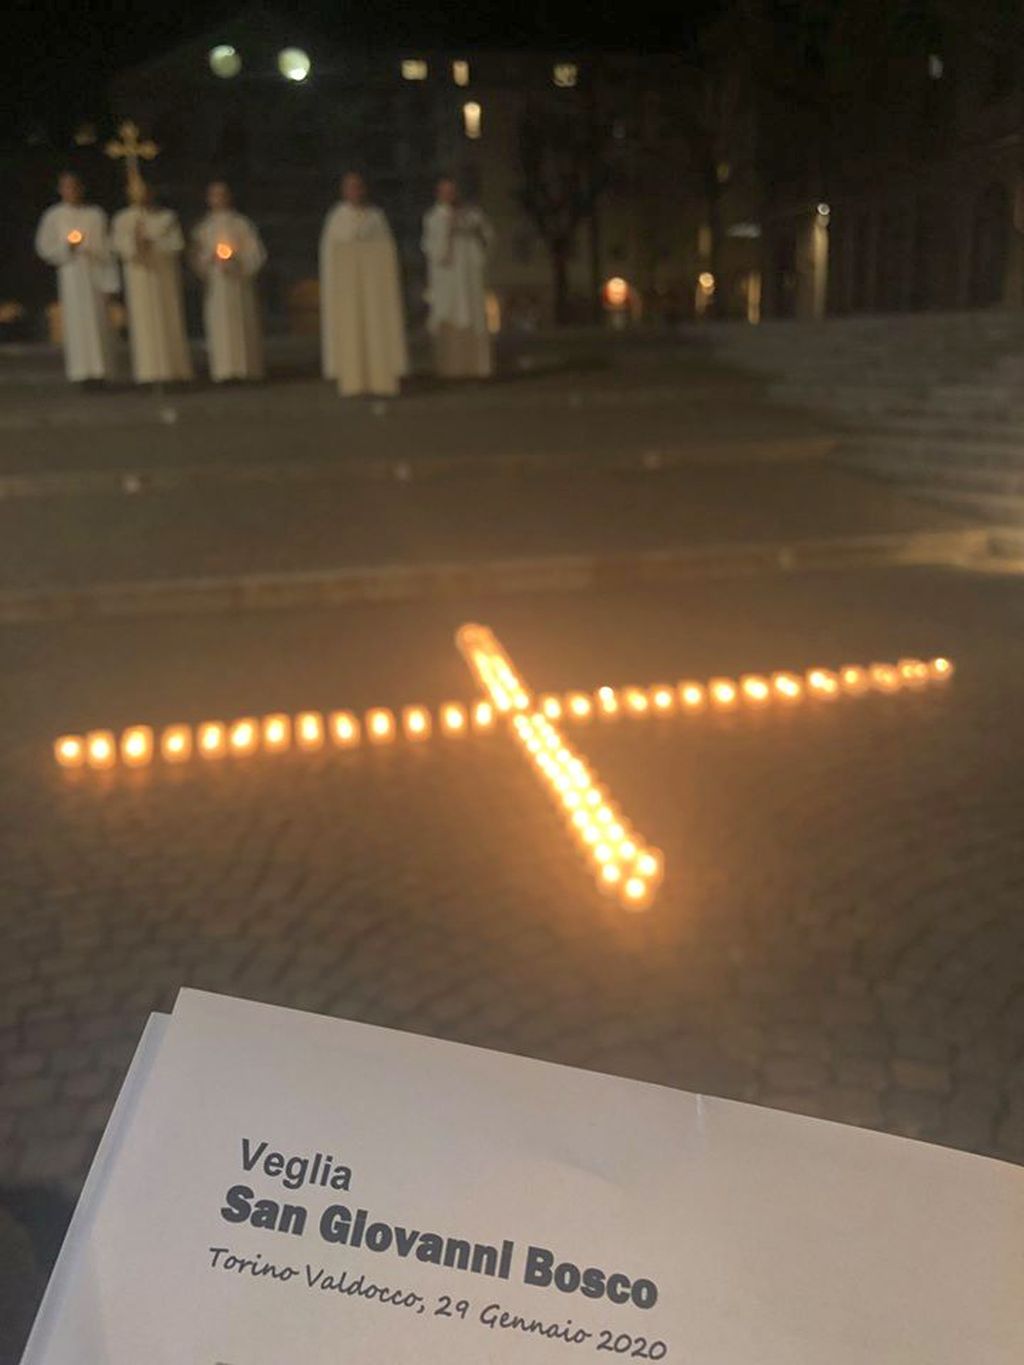 Veglia di preghiera a Valdocco per la festra di S. Giovanni Bosco, Torino 29 gennaio 2020